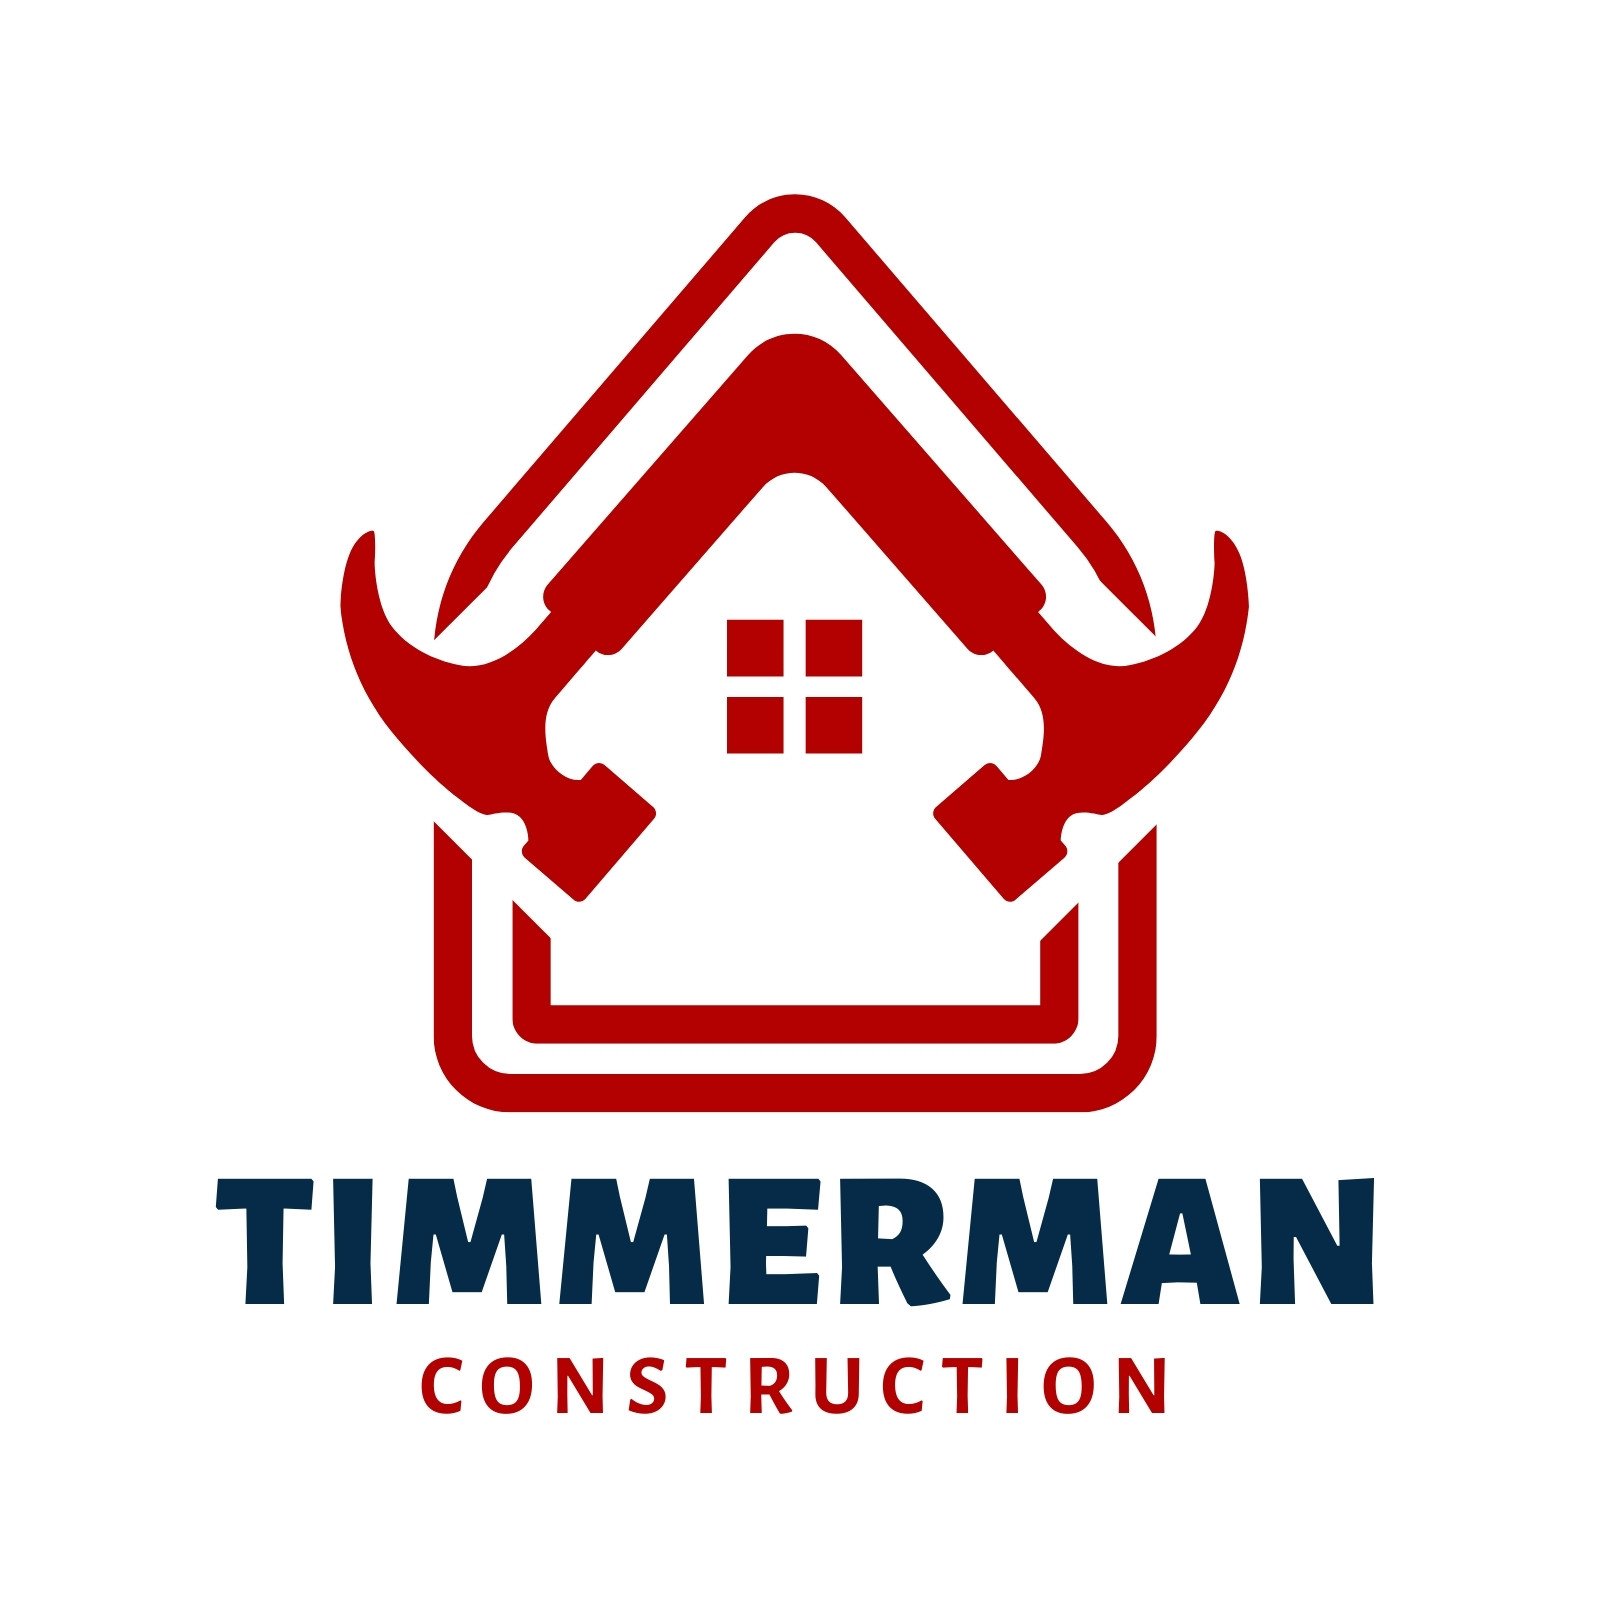 construction logos